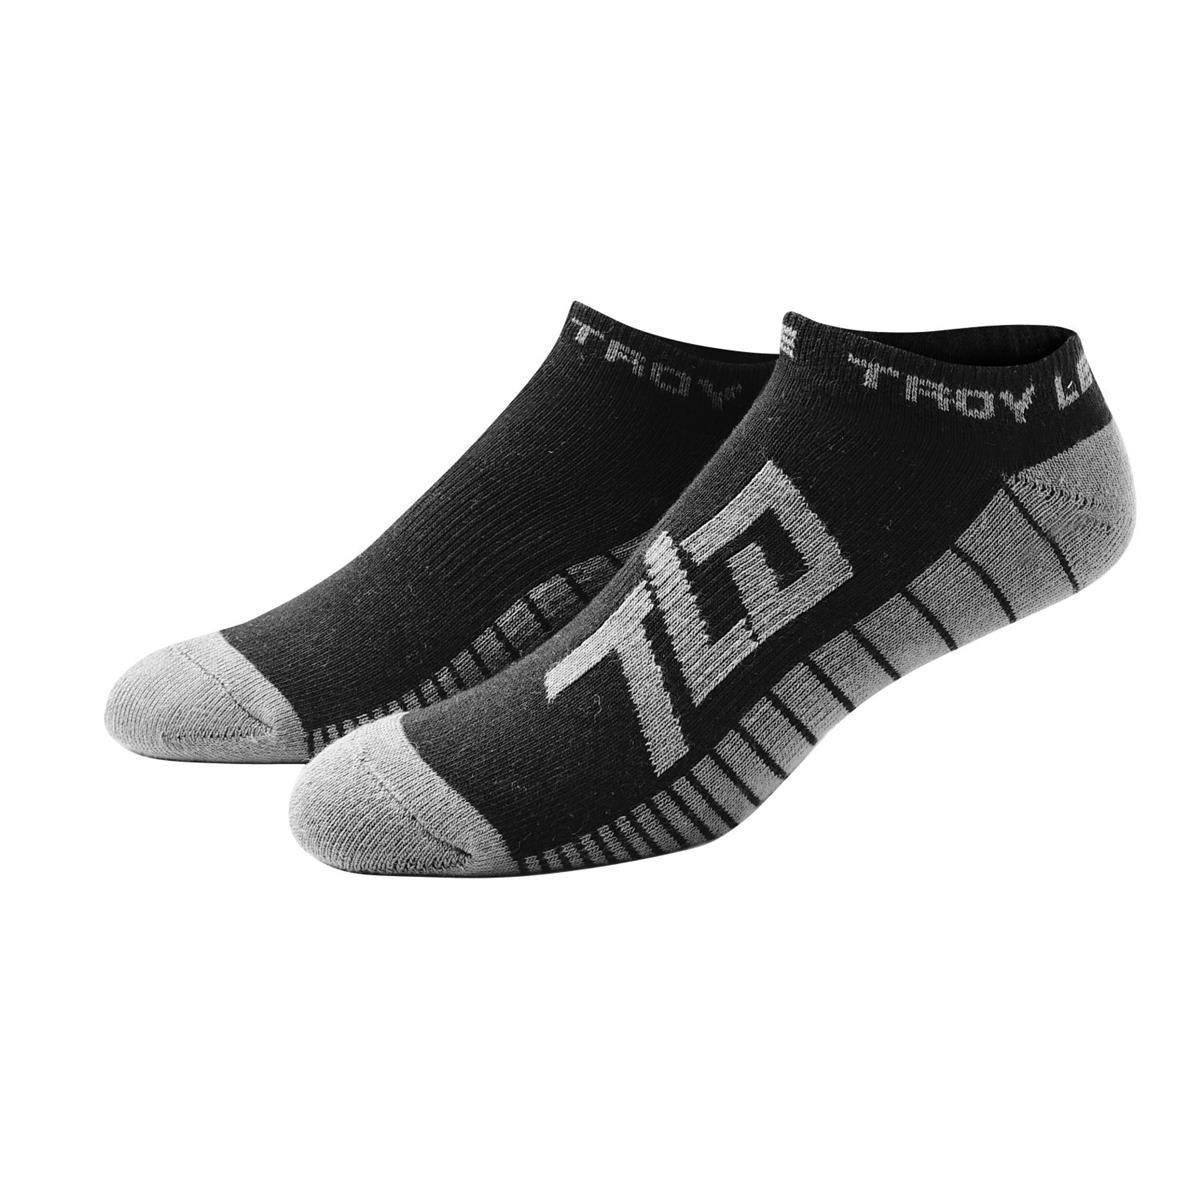 Troy Lee Designs Socken Factory Ankle Schwarz, 3er Pack